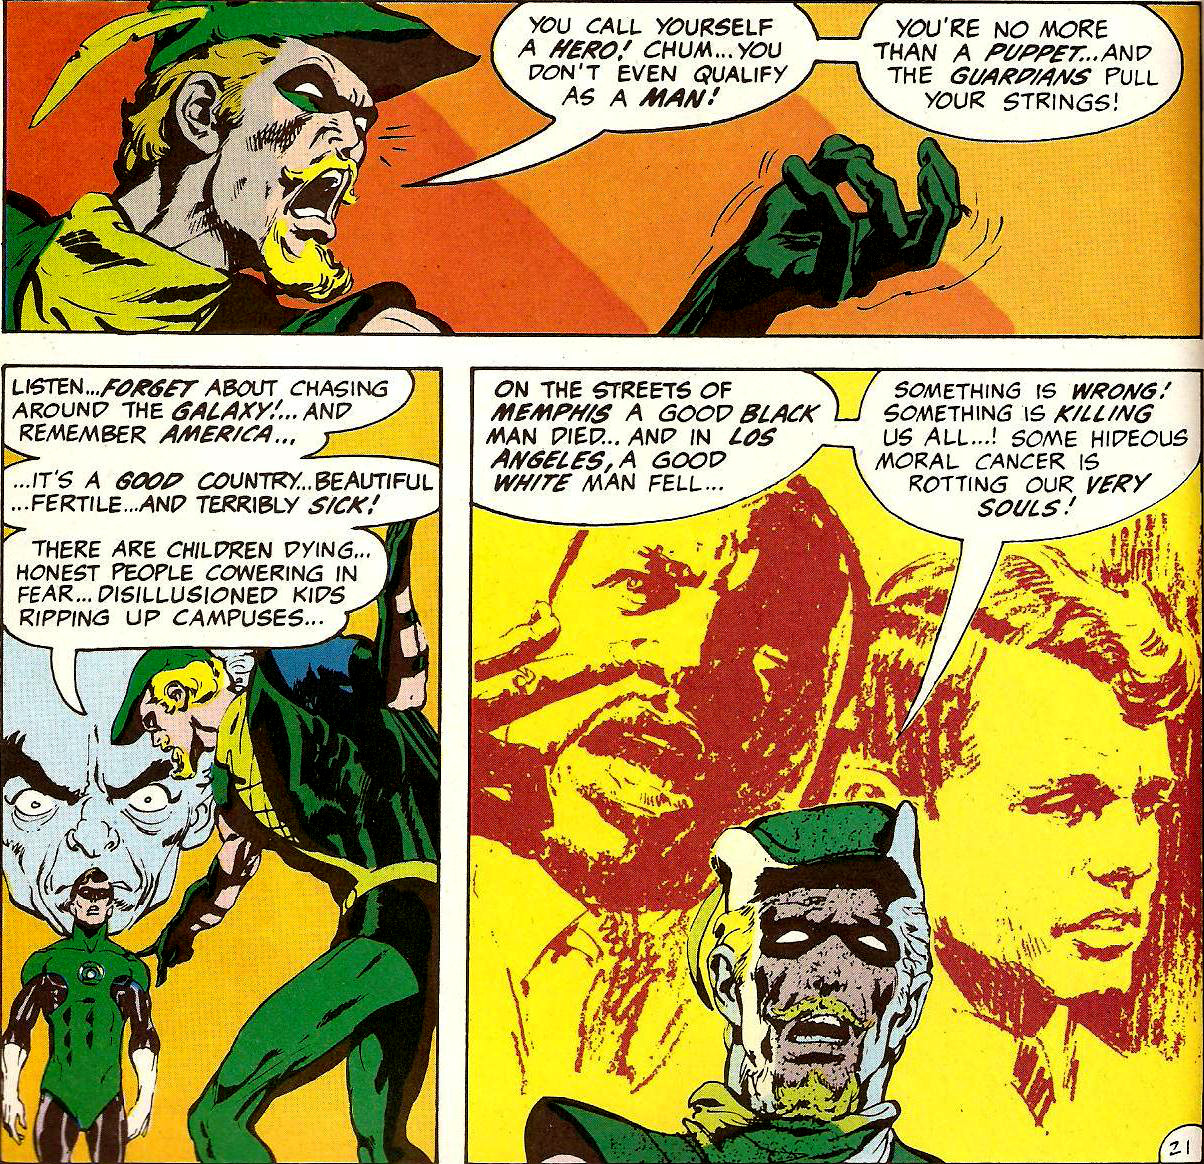 From Green Lantern (Vol. 2) #76 (1970)